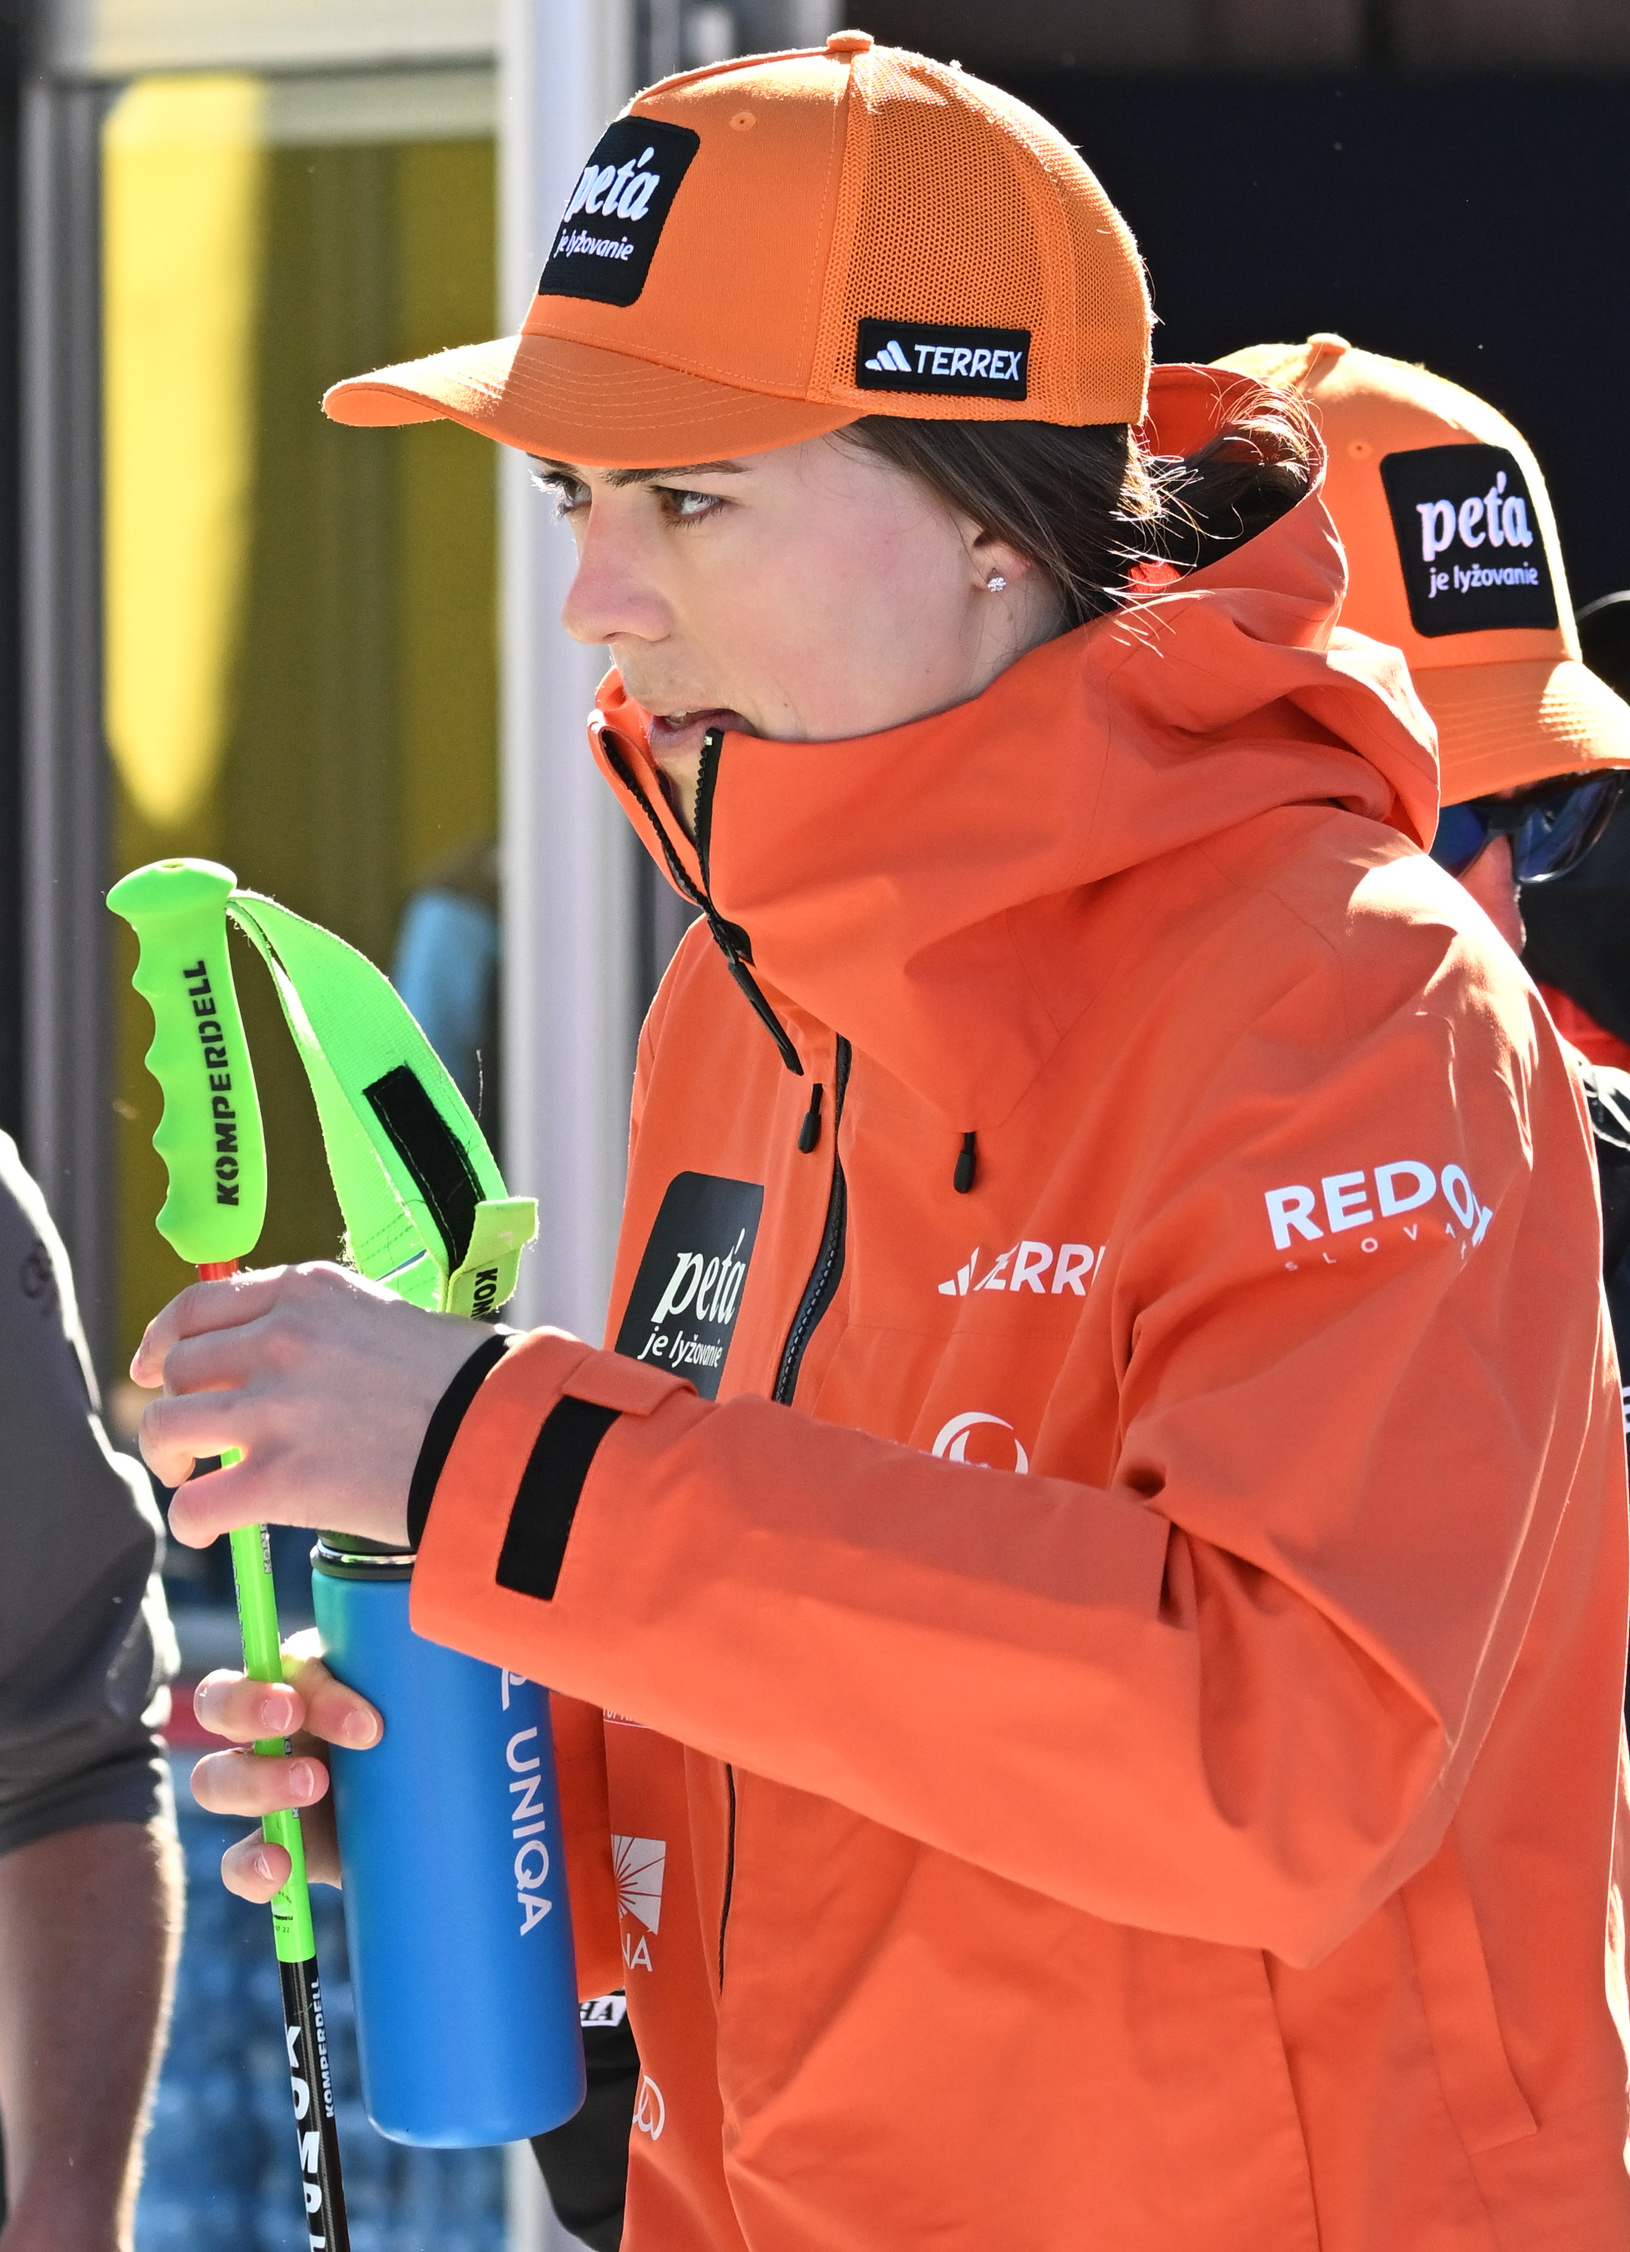 Slovenská lyžiarka Petra Vlhová